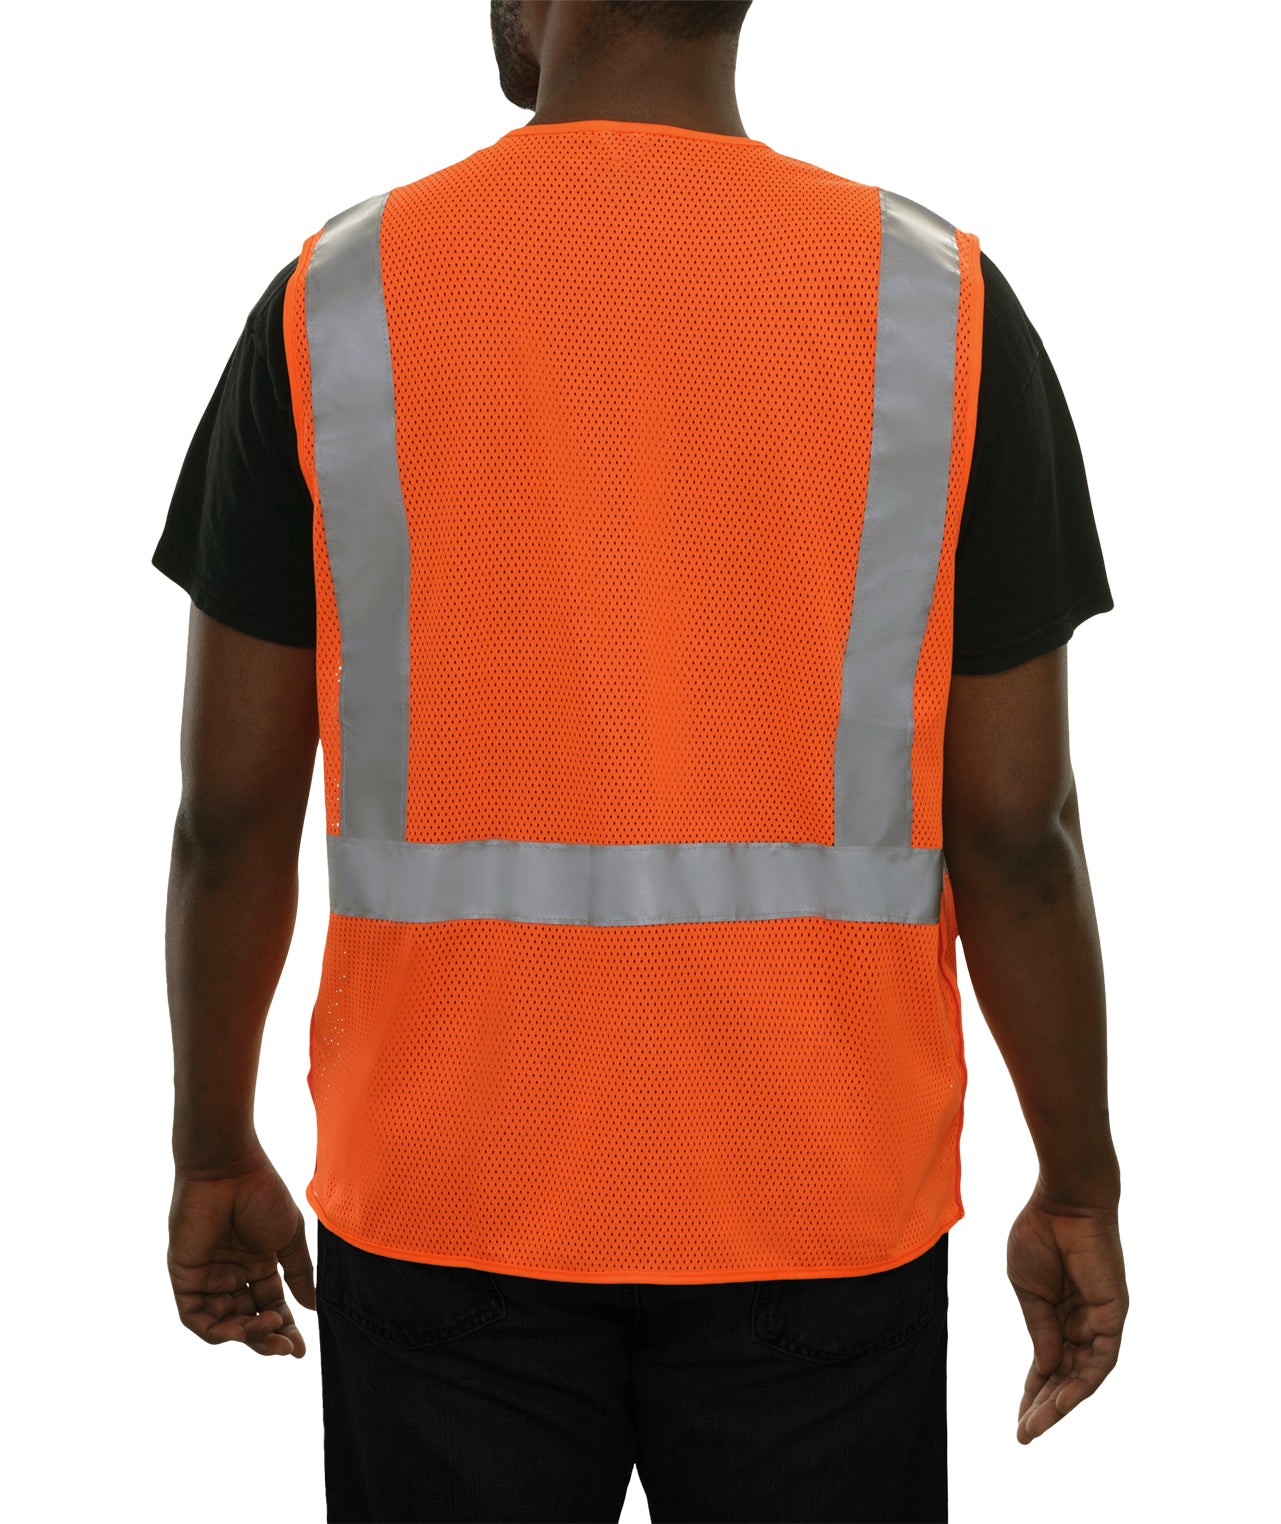 508STOR Safety Vest: Hi-Vis Vest: Clear ID Pocket: 5pt Breakaway: Orange Zip Mesh